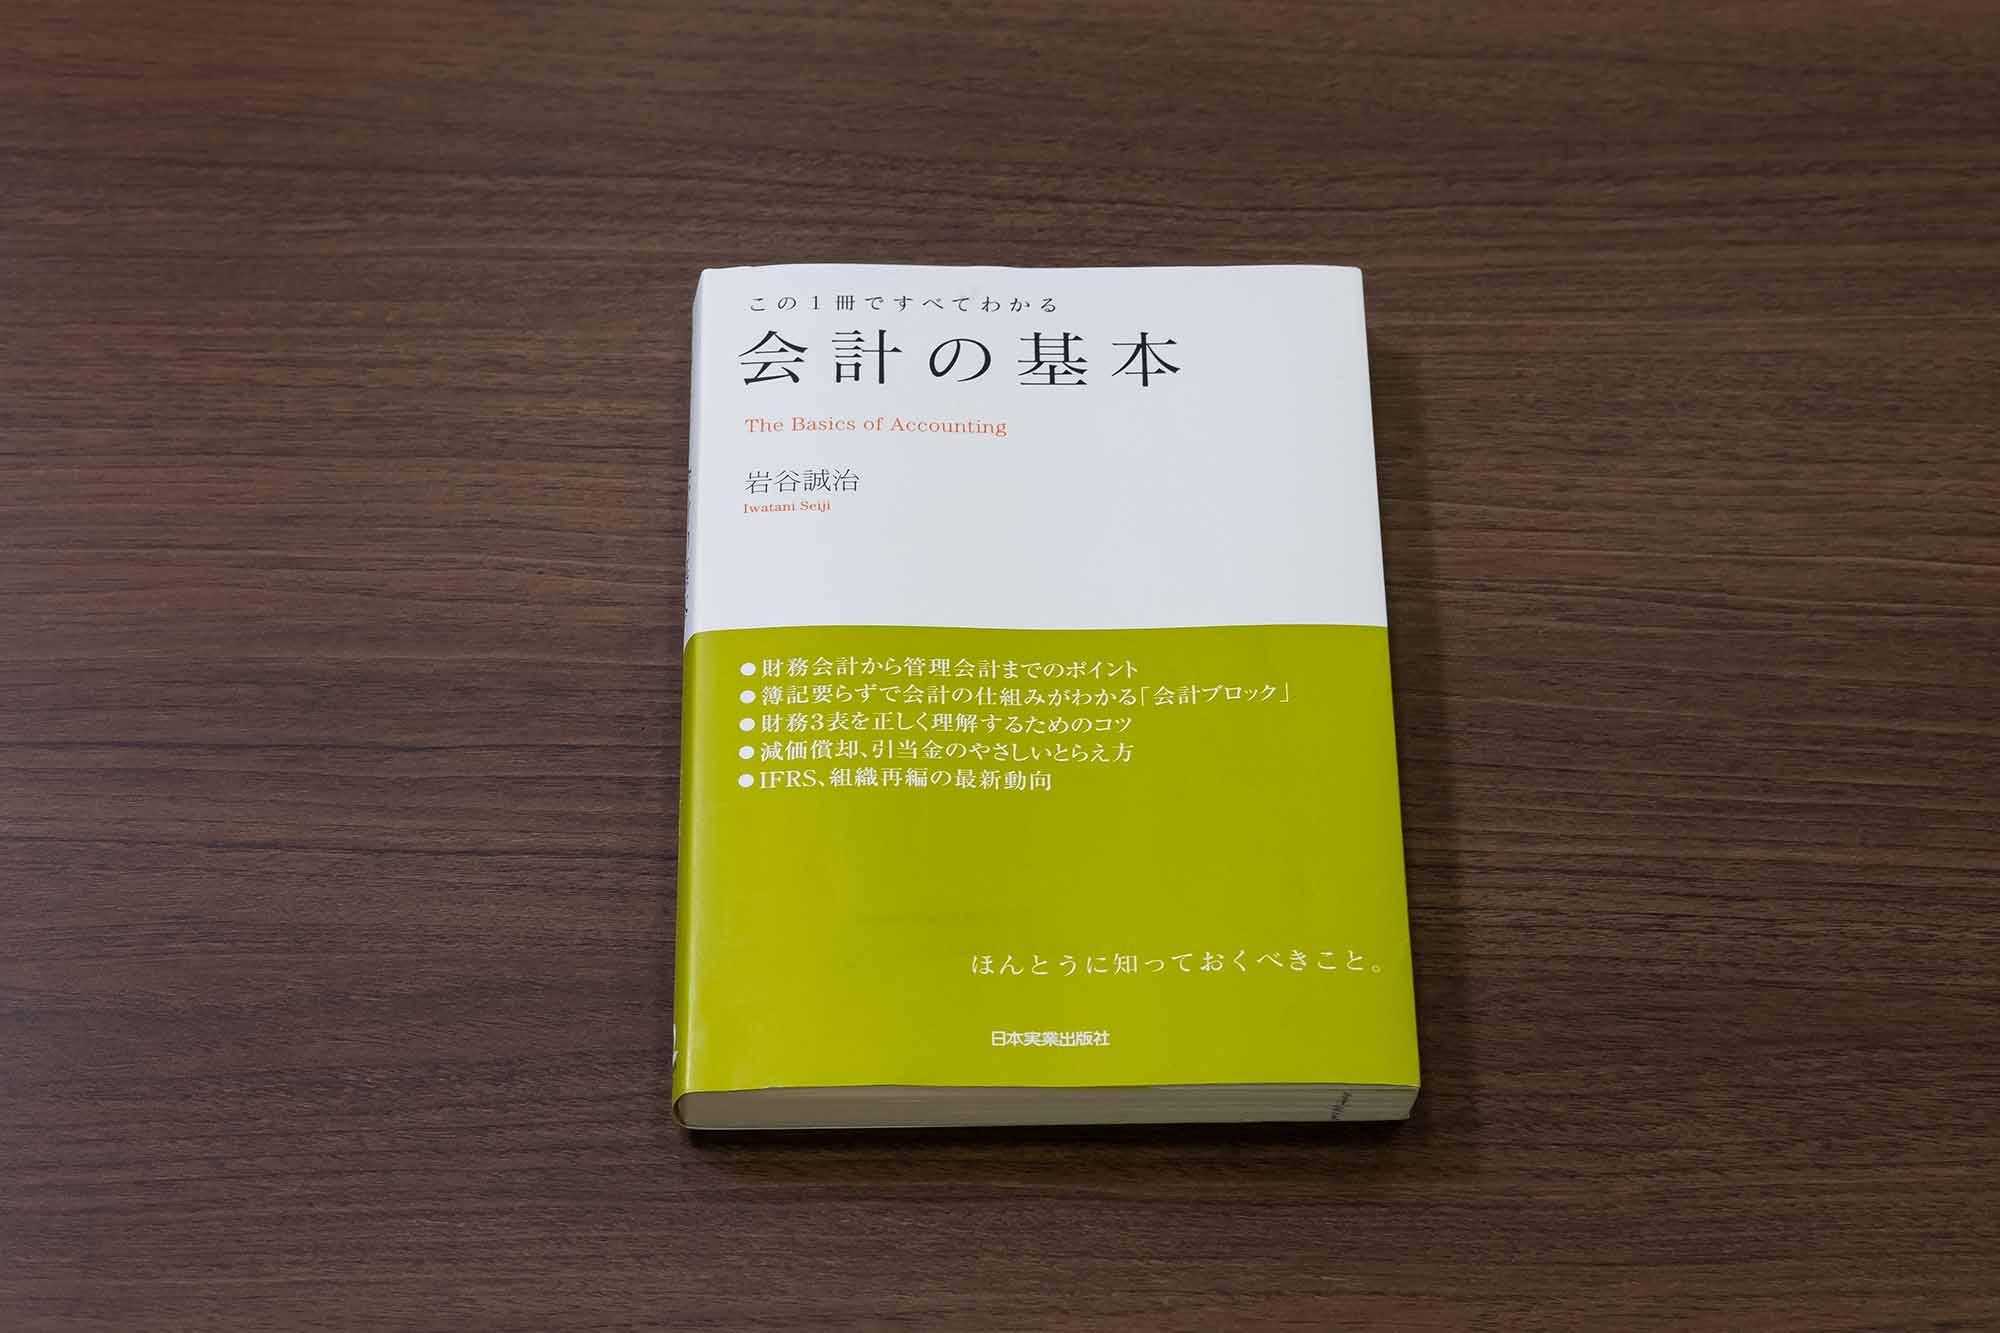 Z会 社内の「共通言語」を作る昇格試験の課題図書4冊 | 日経BOOKプラス